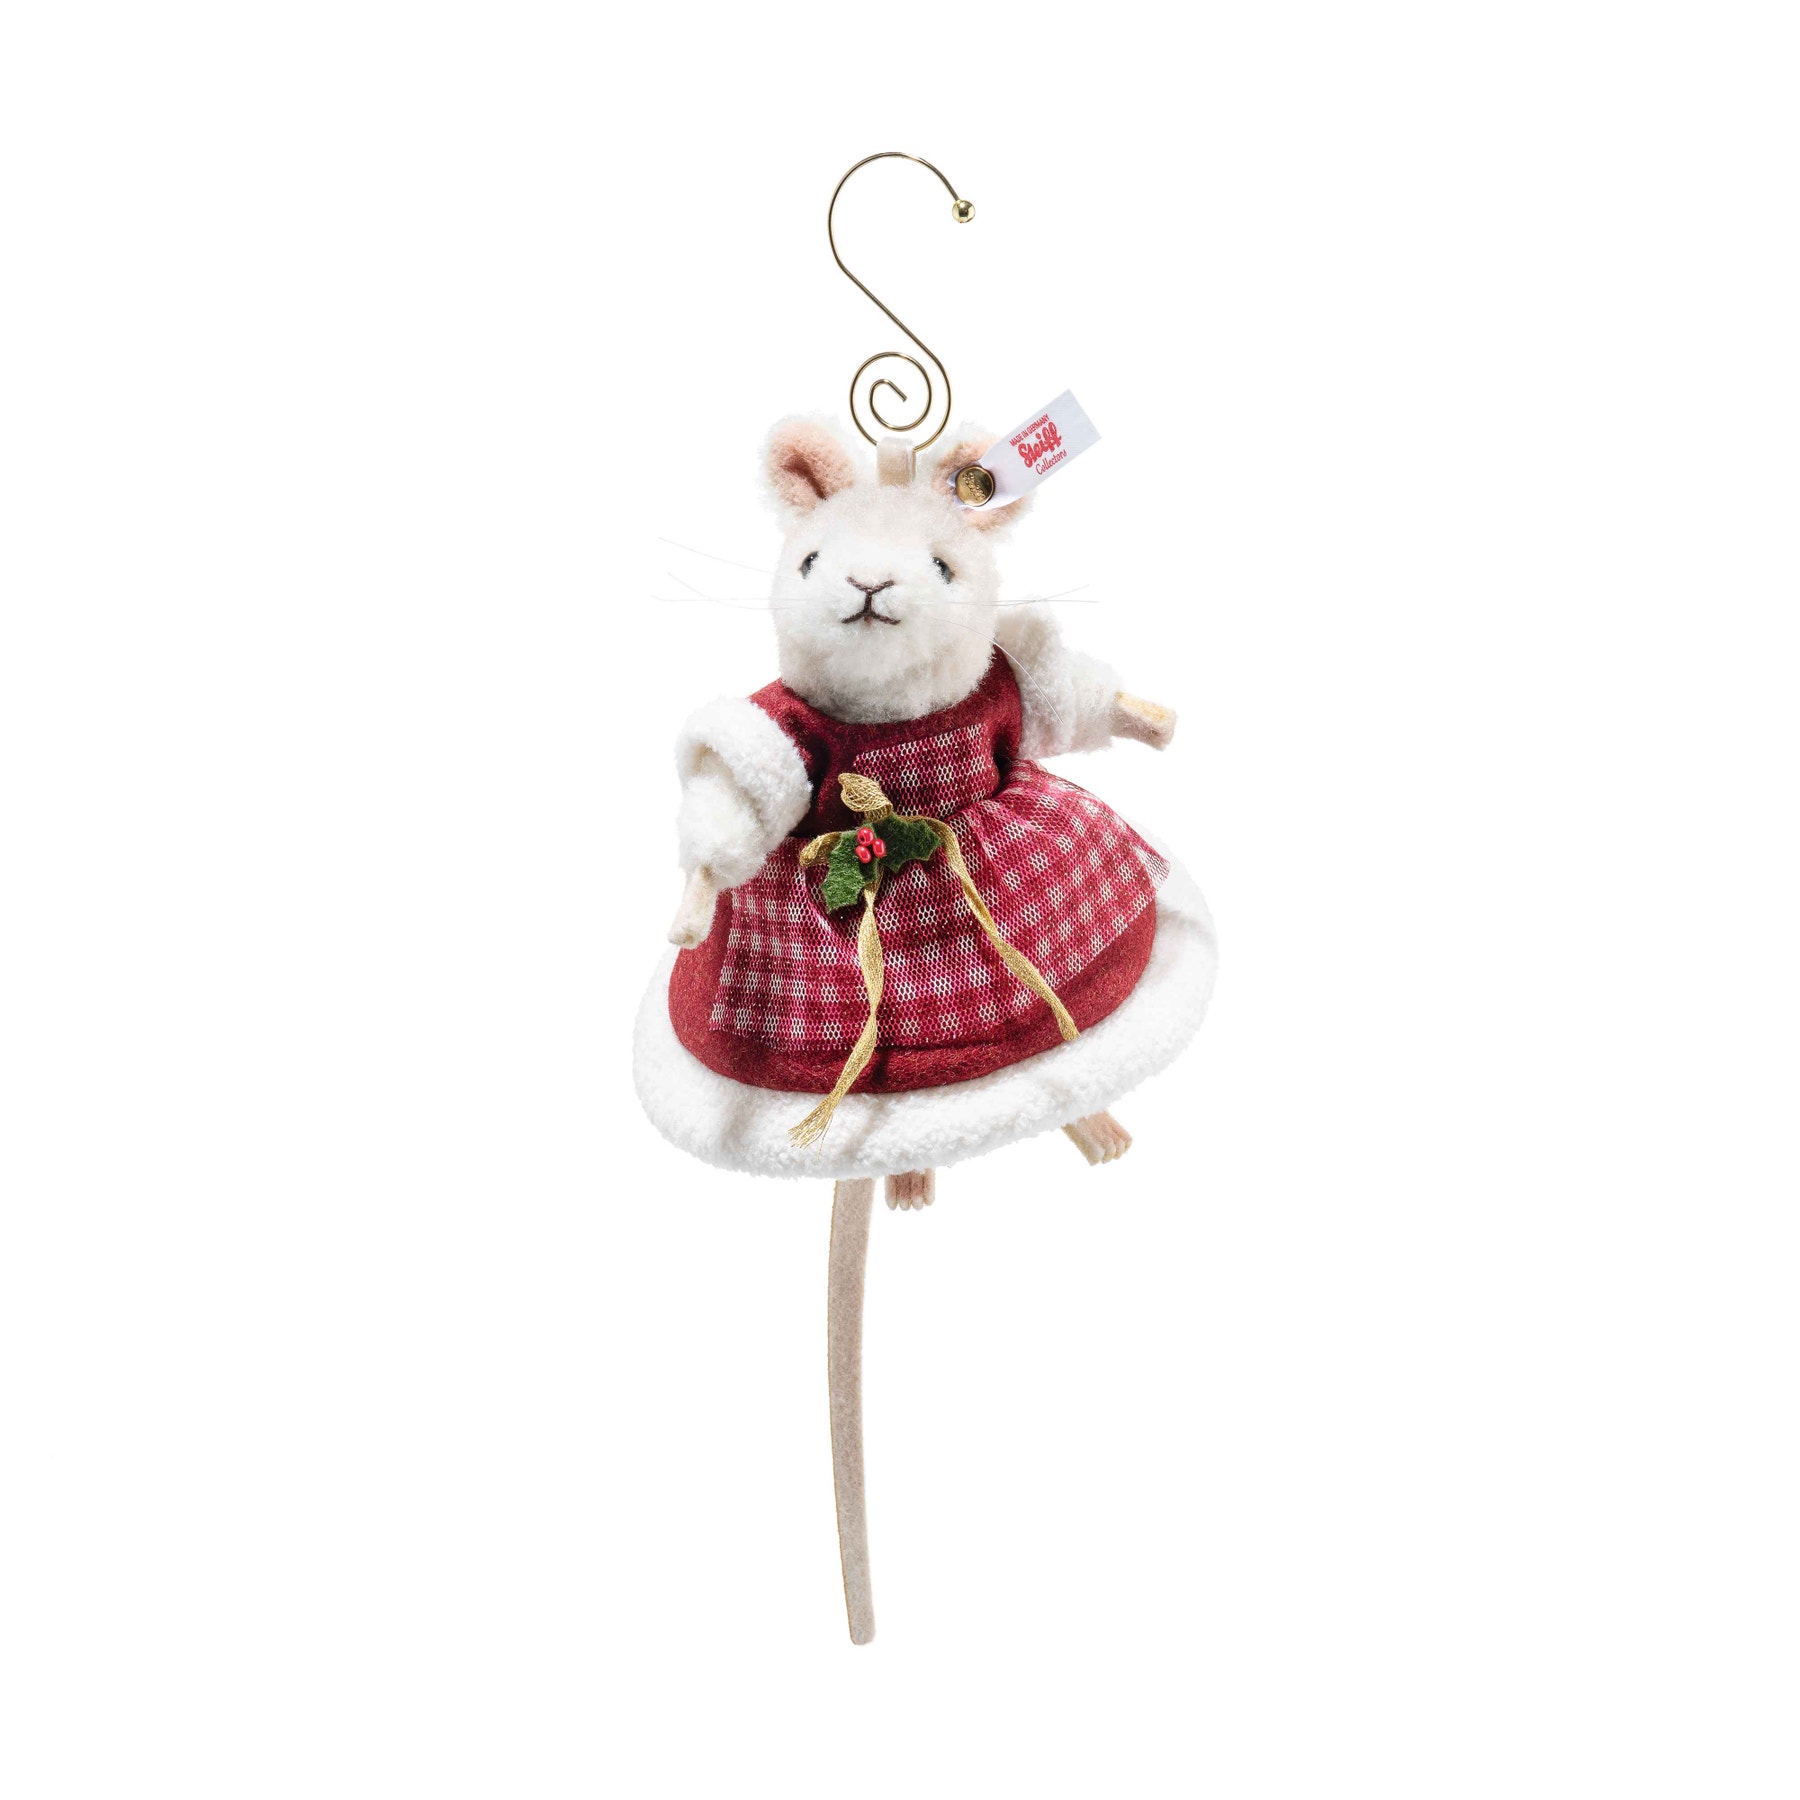 Mrs. Santa Claus Mouse Ornament